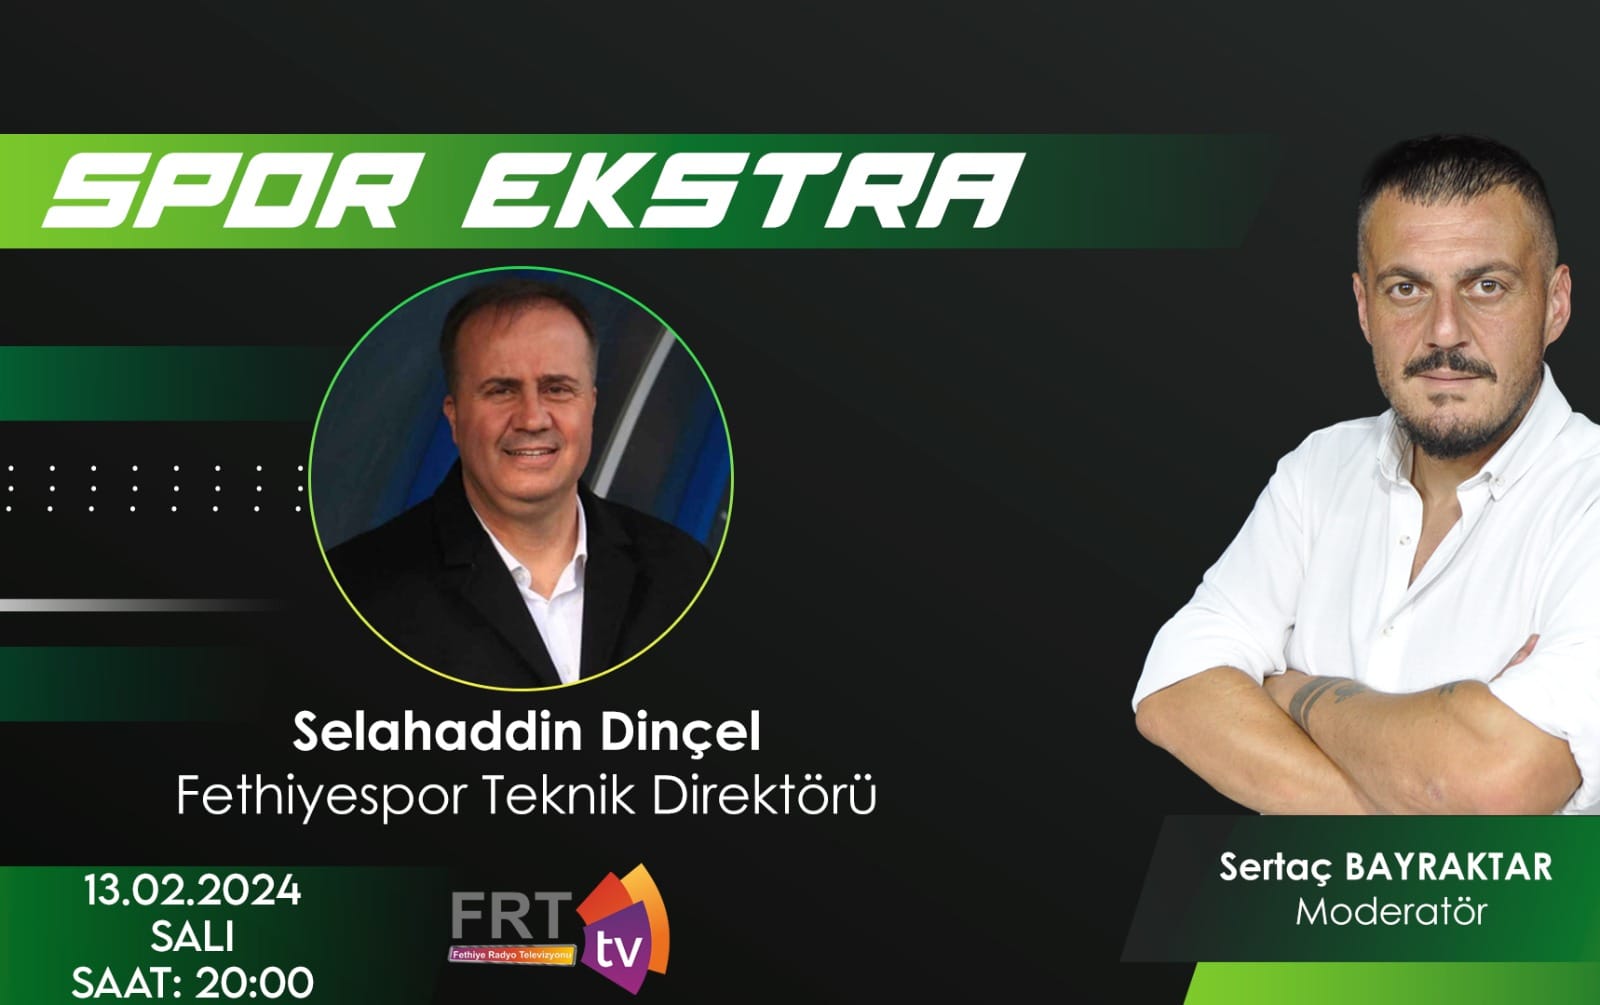 Fethiye'nin ünlü teknik direktörü Selahaddin Dinçel, Spor Ekstra programında takımın gelecek planlarını anlatacak.